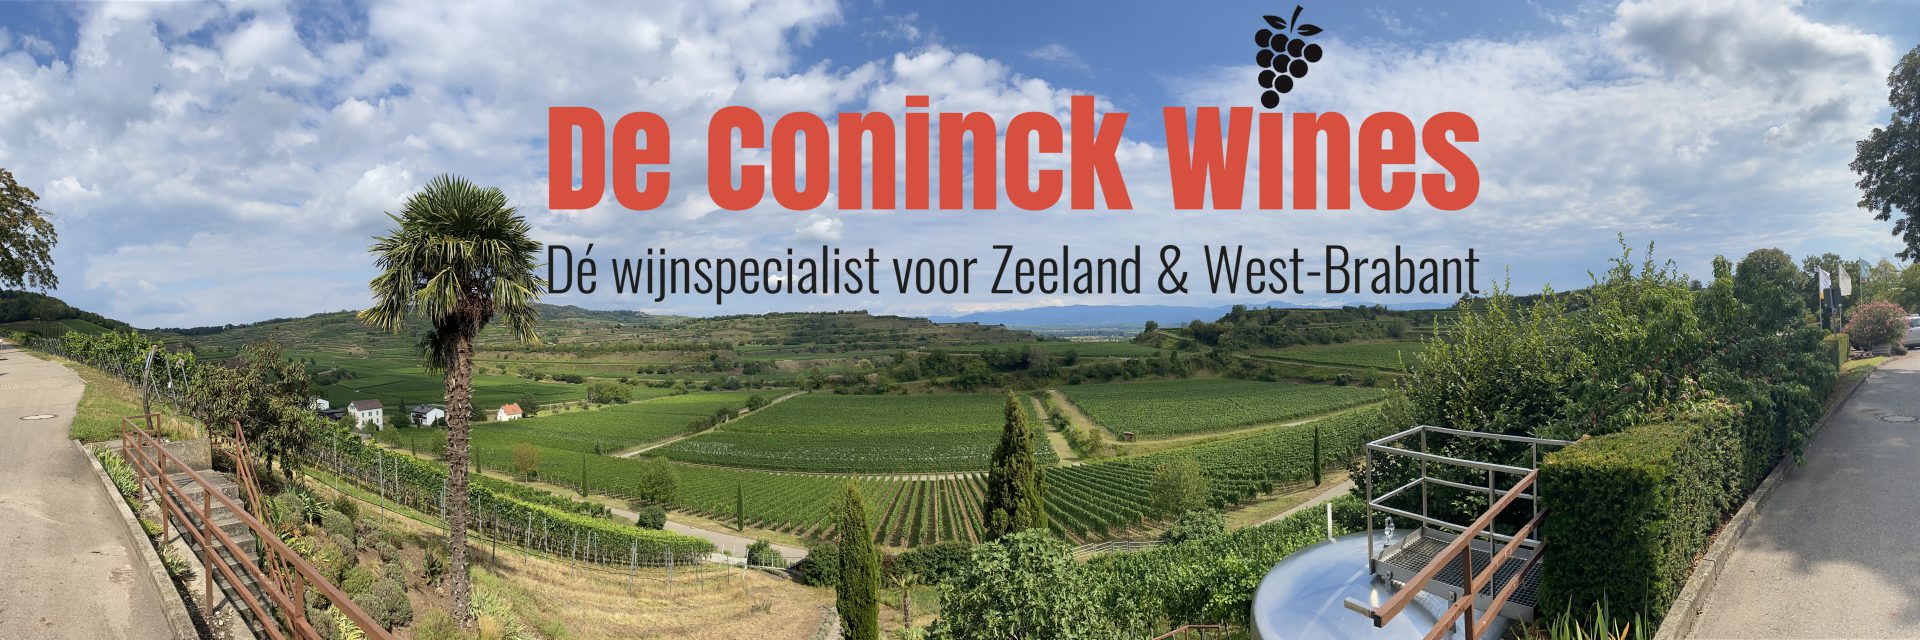 De Coninckwines, jouw service gerichte wijnleverancier van Zeeland